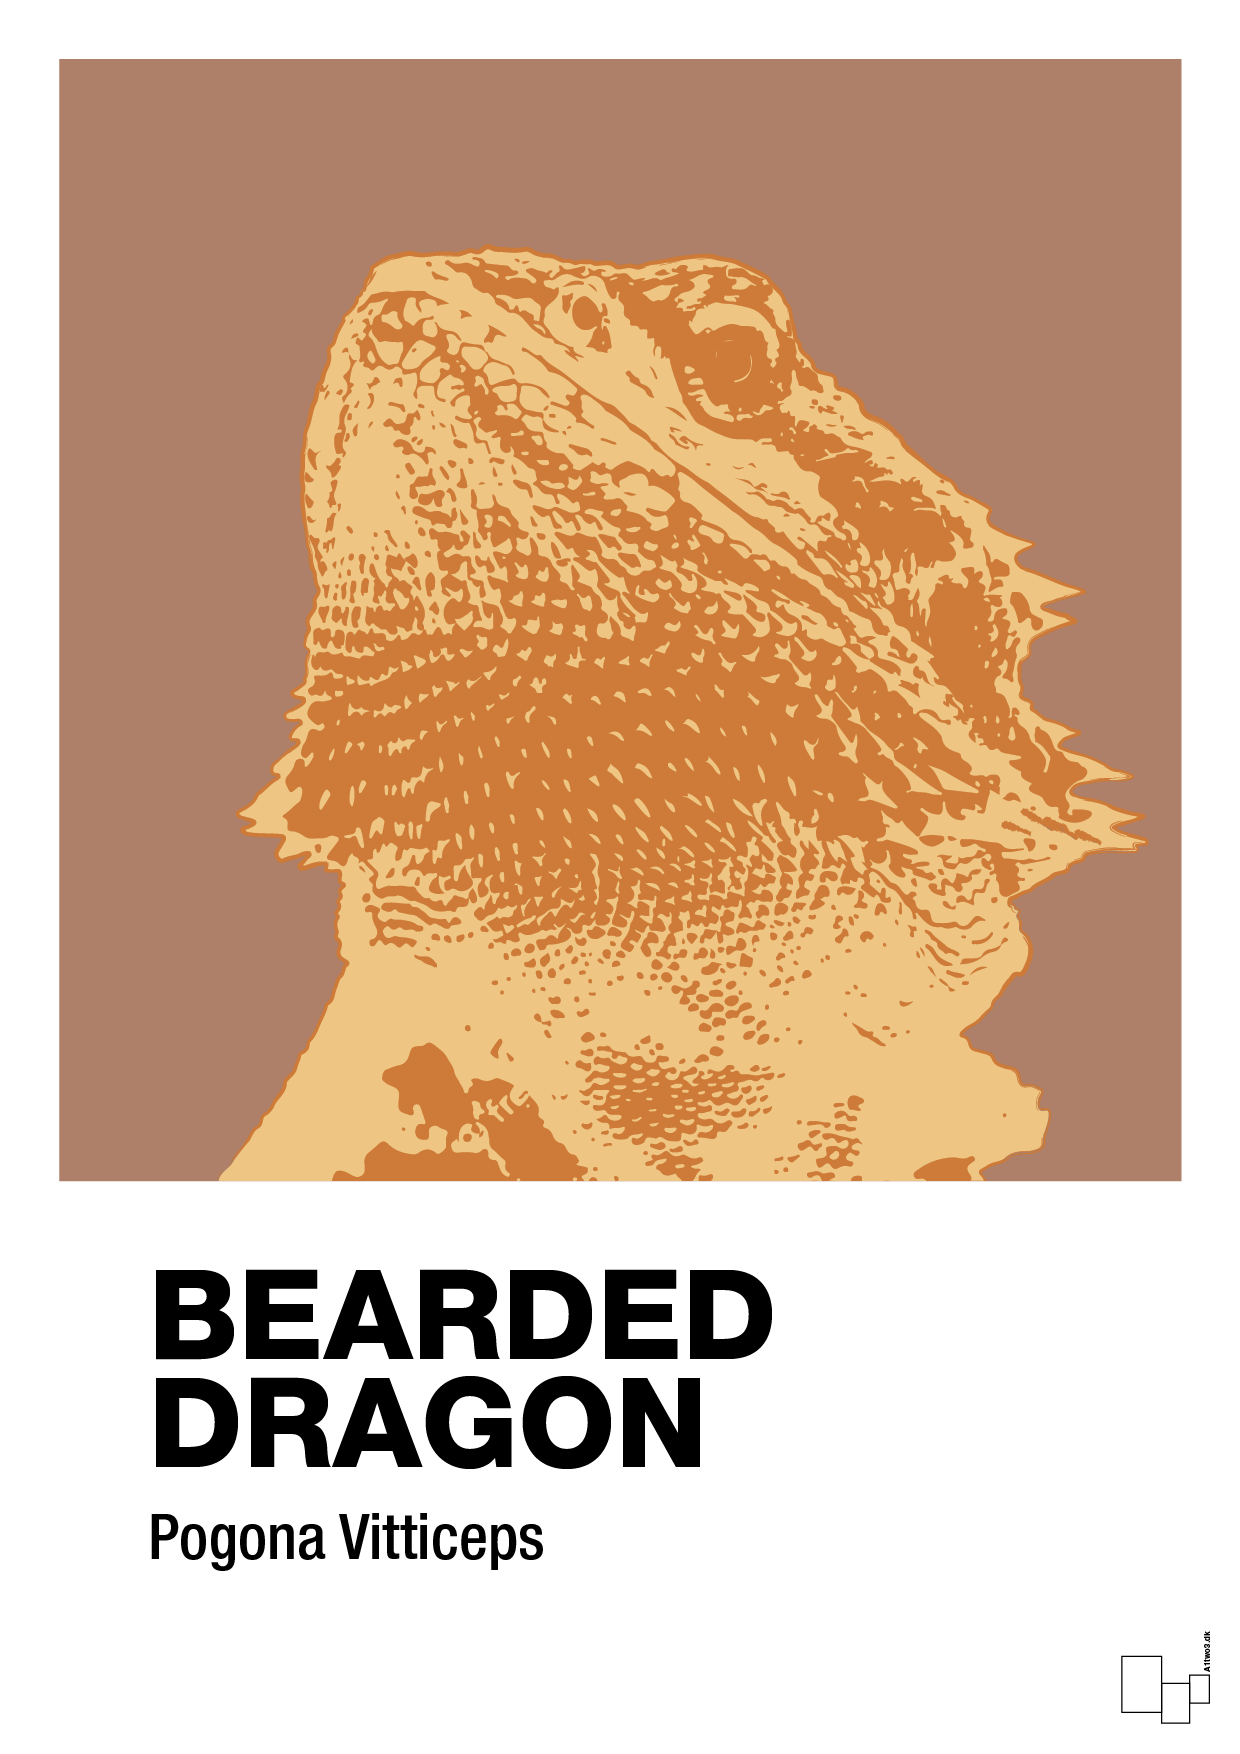 bearded dragon - Plakat med Videnskab i Cider Spice